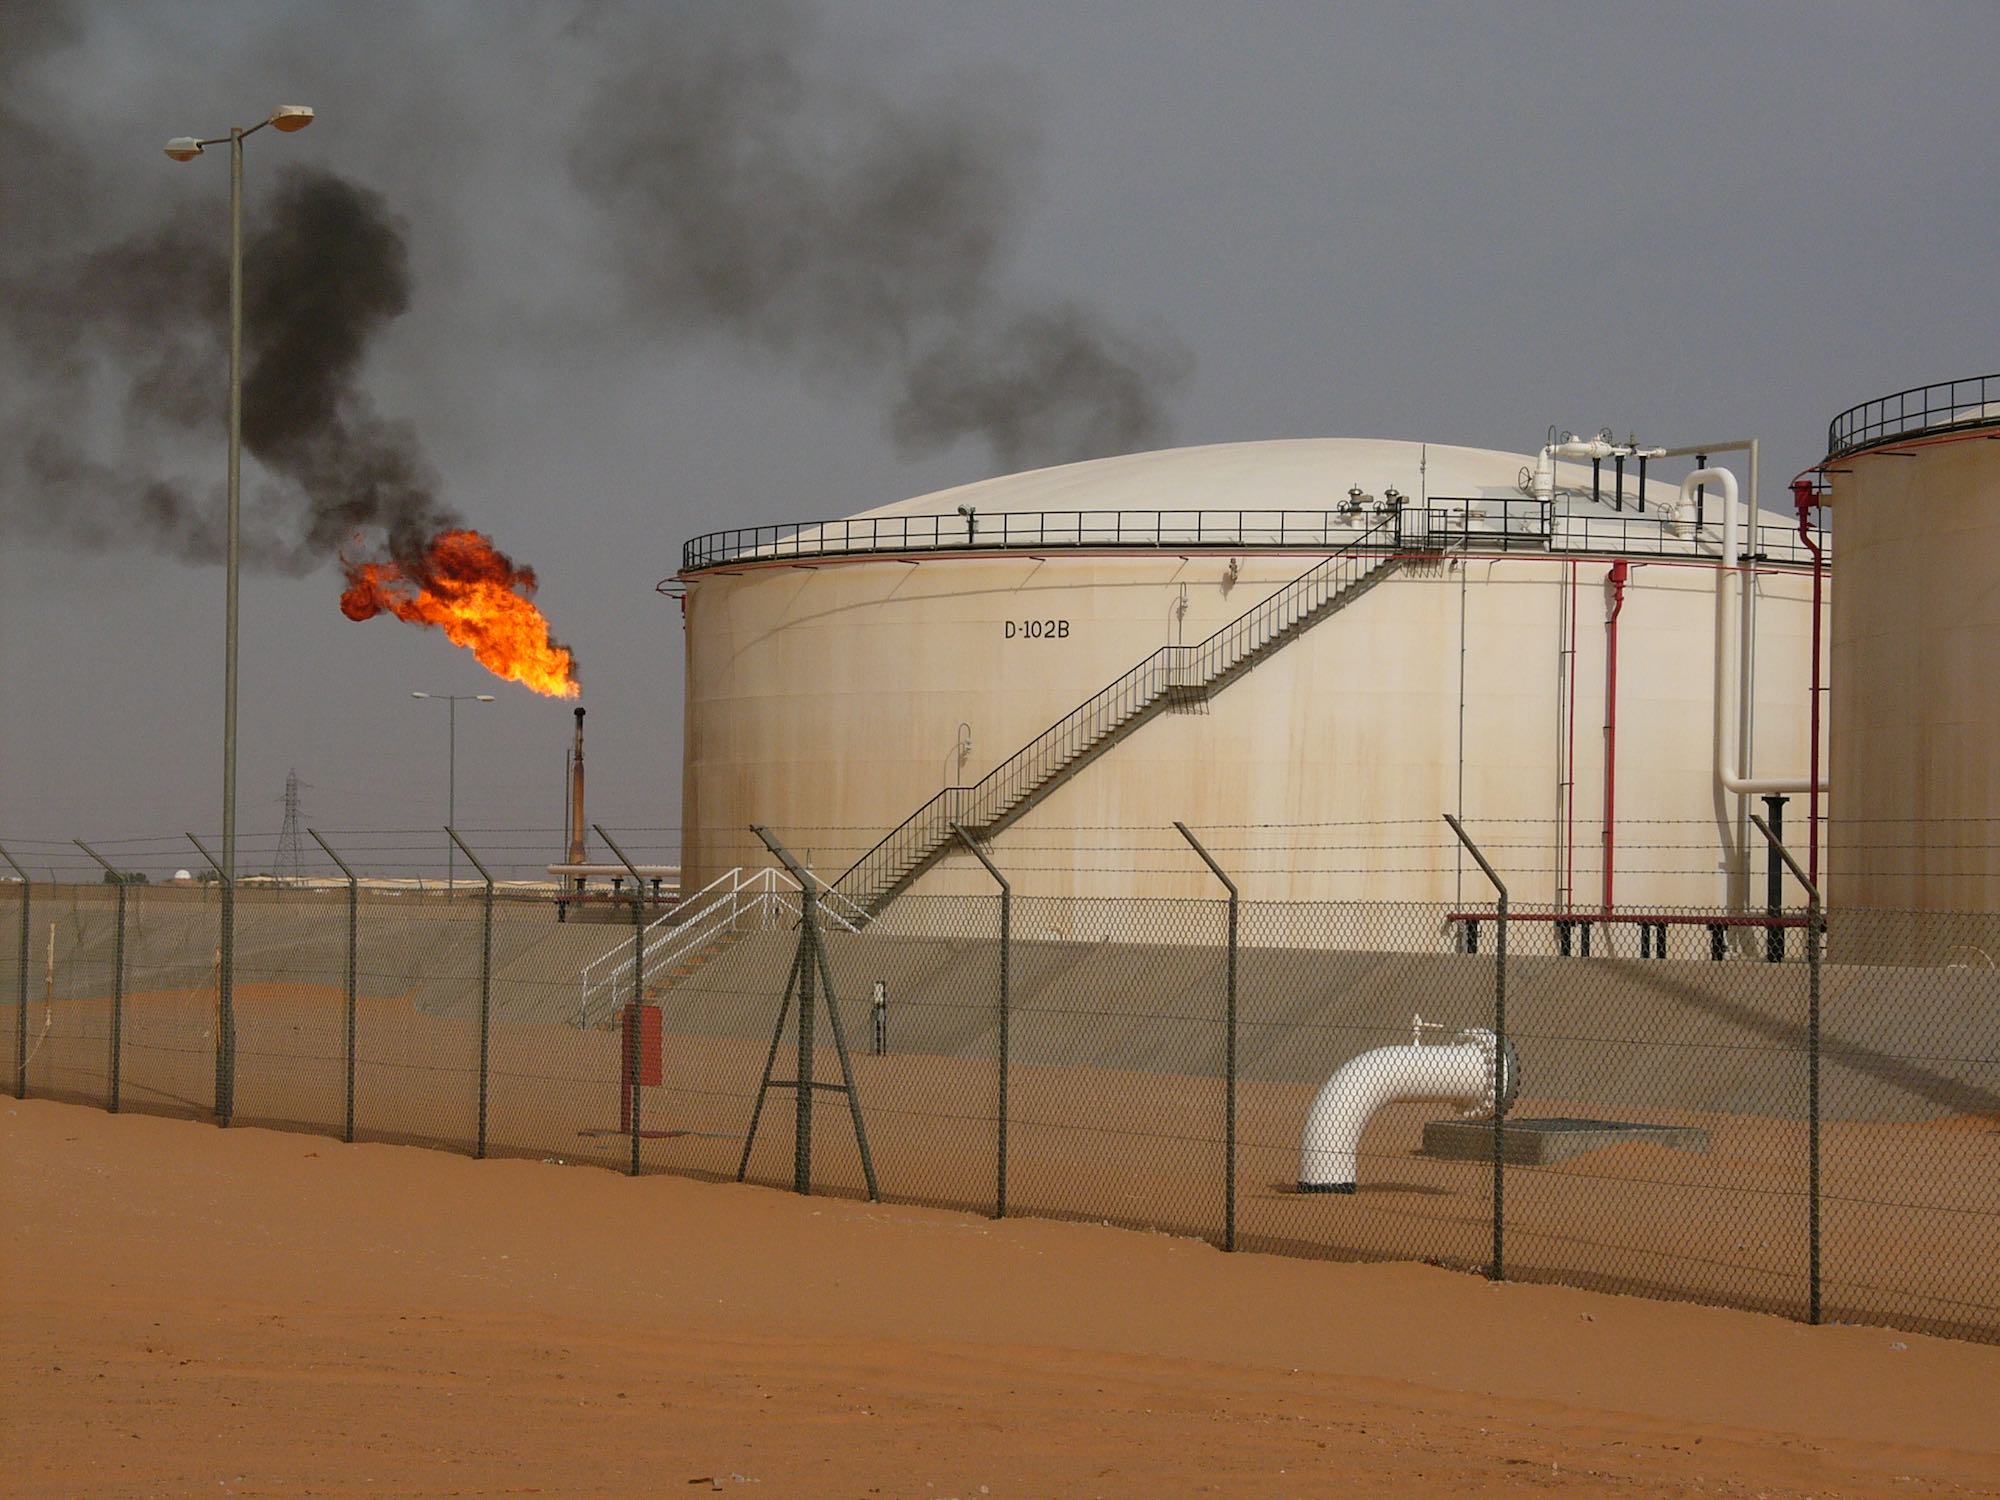 El Sharara oil field in Libya